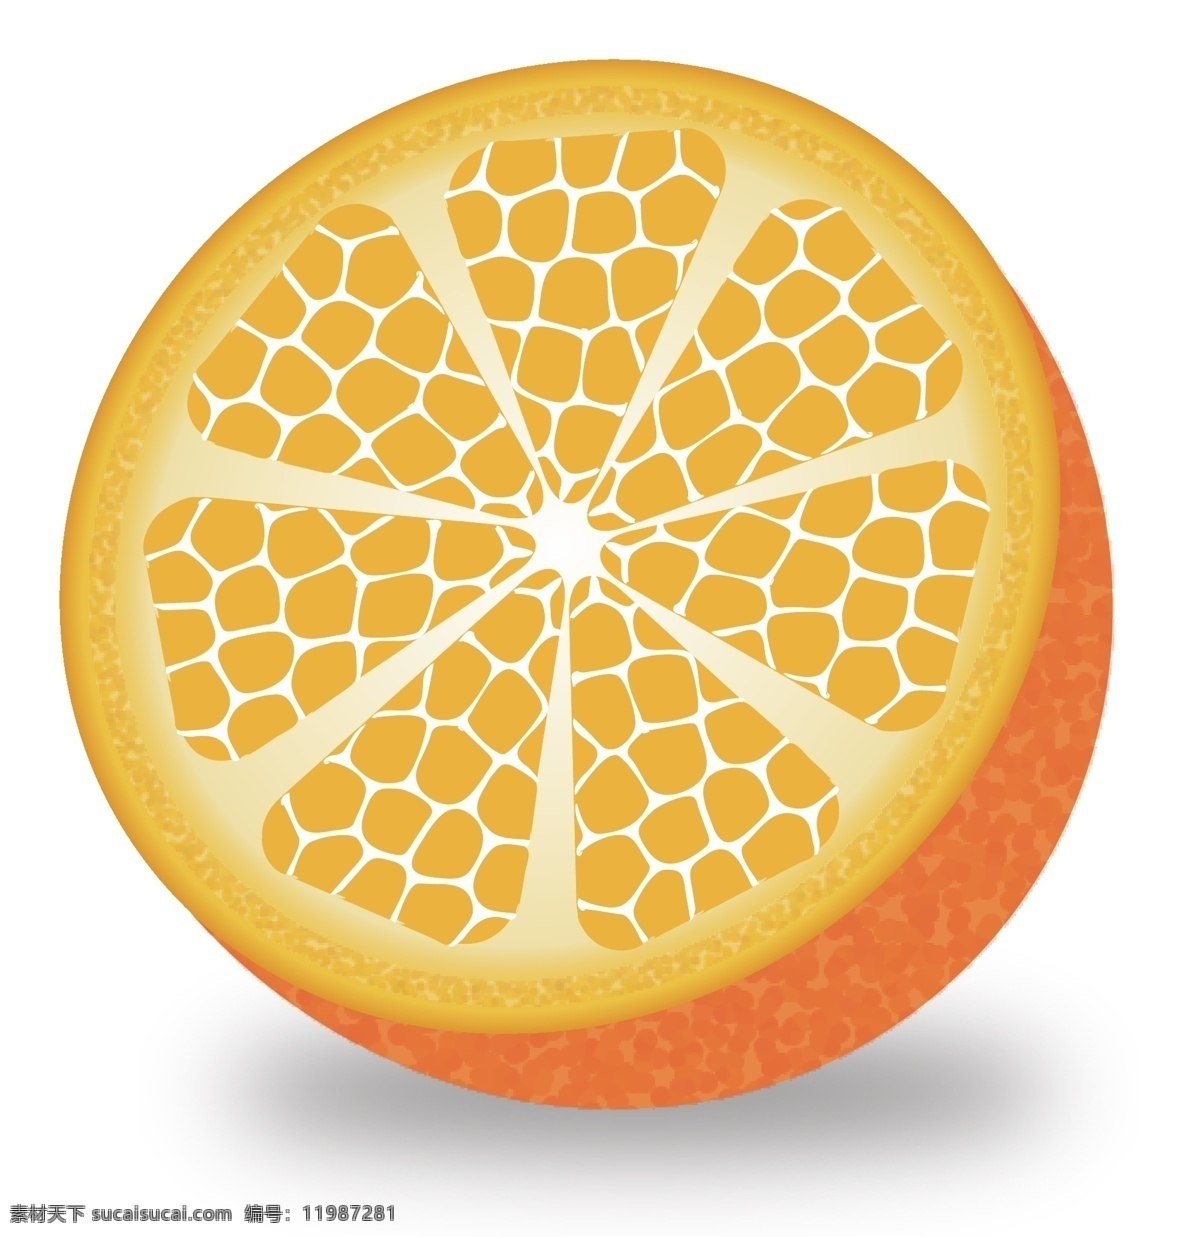 成熟 水果 金黄色 切开 半边 橙子 矢量 元素 成熟的水果 金黄色的橙子 柑 半边水果 半边橙子 手绘水果 手绘橙子 一半橙子 一边橙子 斜切的橙子 新鲜橙子